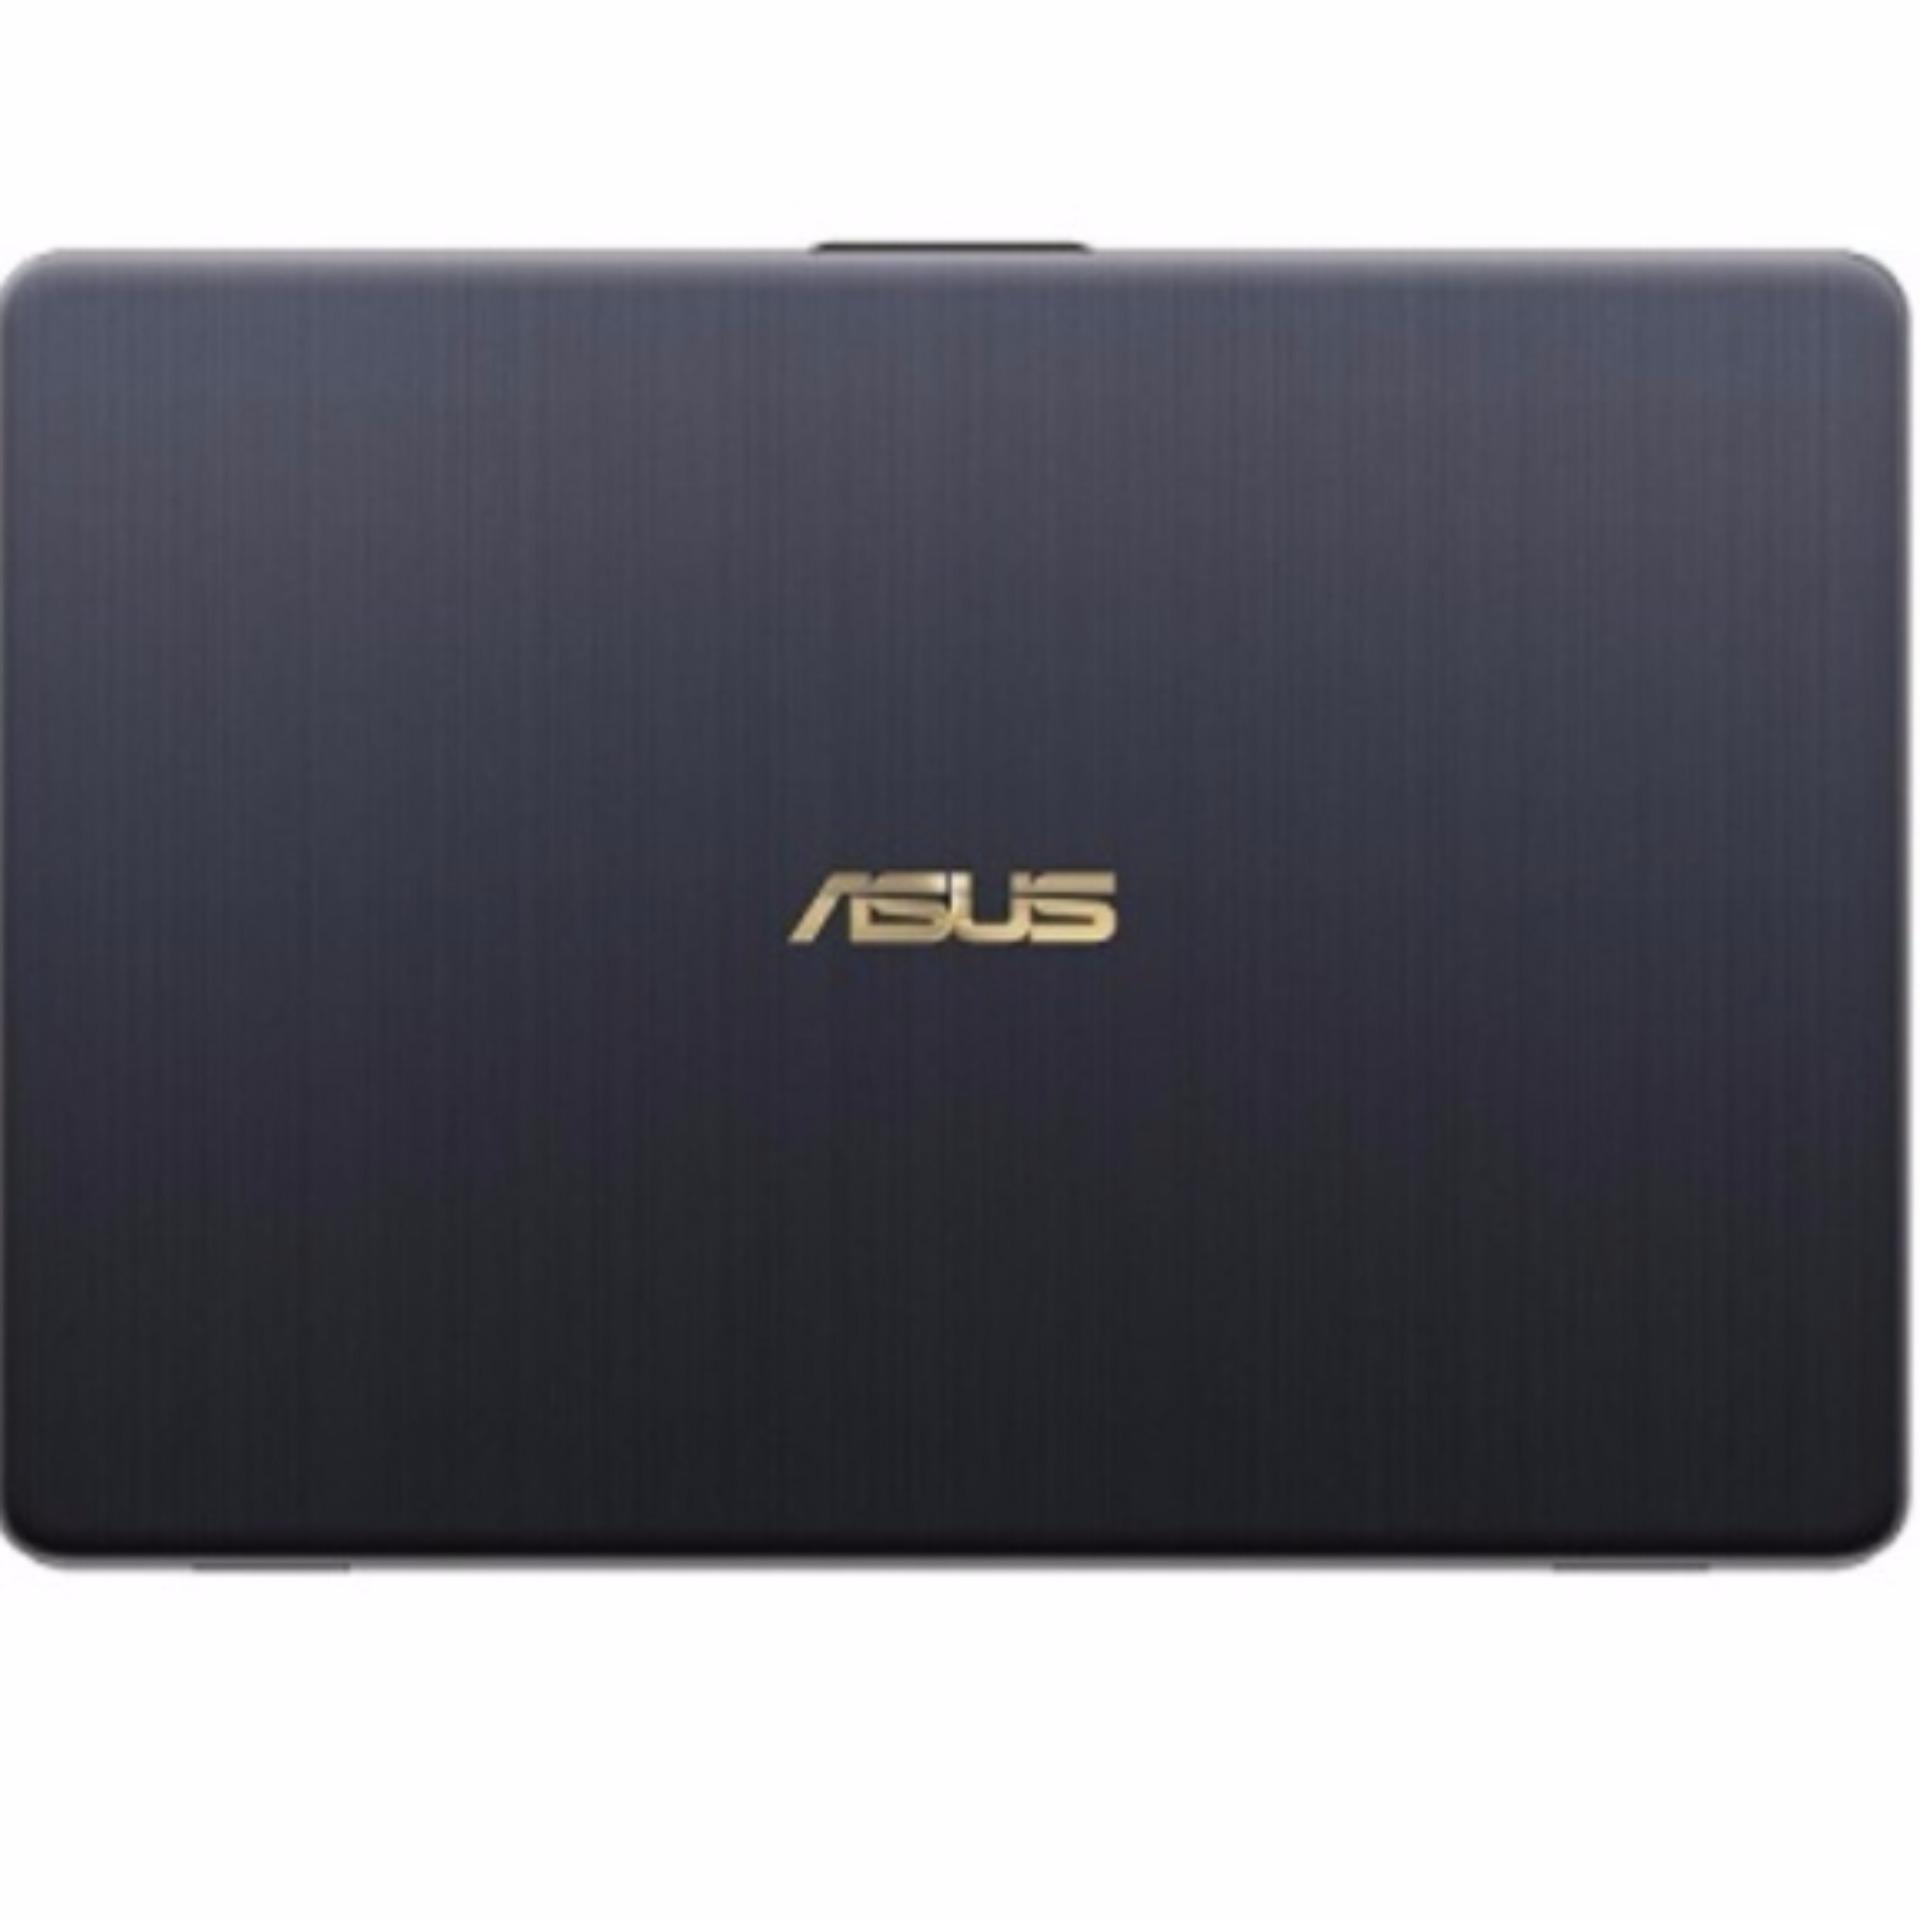 Asus VivoBook - X405UQ-BM235T [Intel i7-7500U,14.0INCH FULL HD 8GB RAM, 1TB HDD, GT940MX(2G) WIN 10 HOME